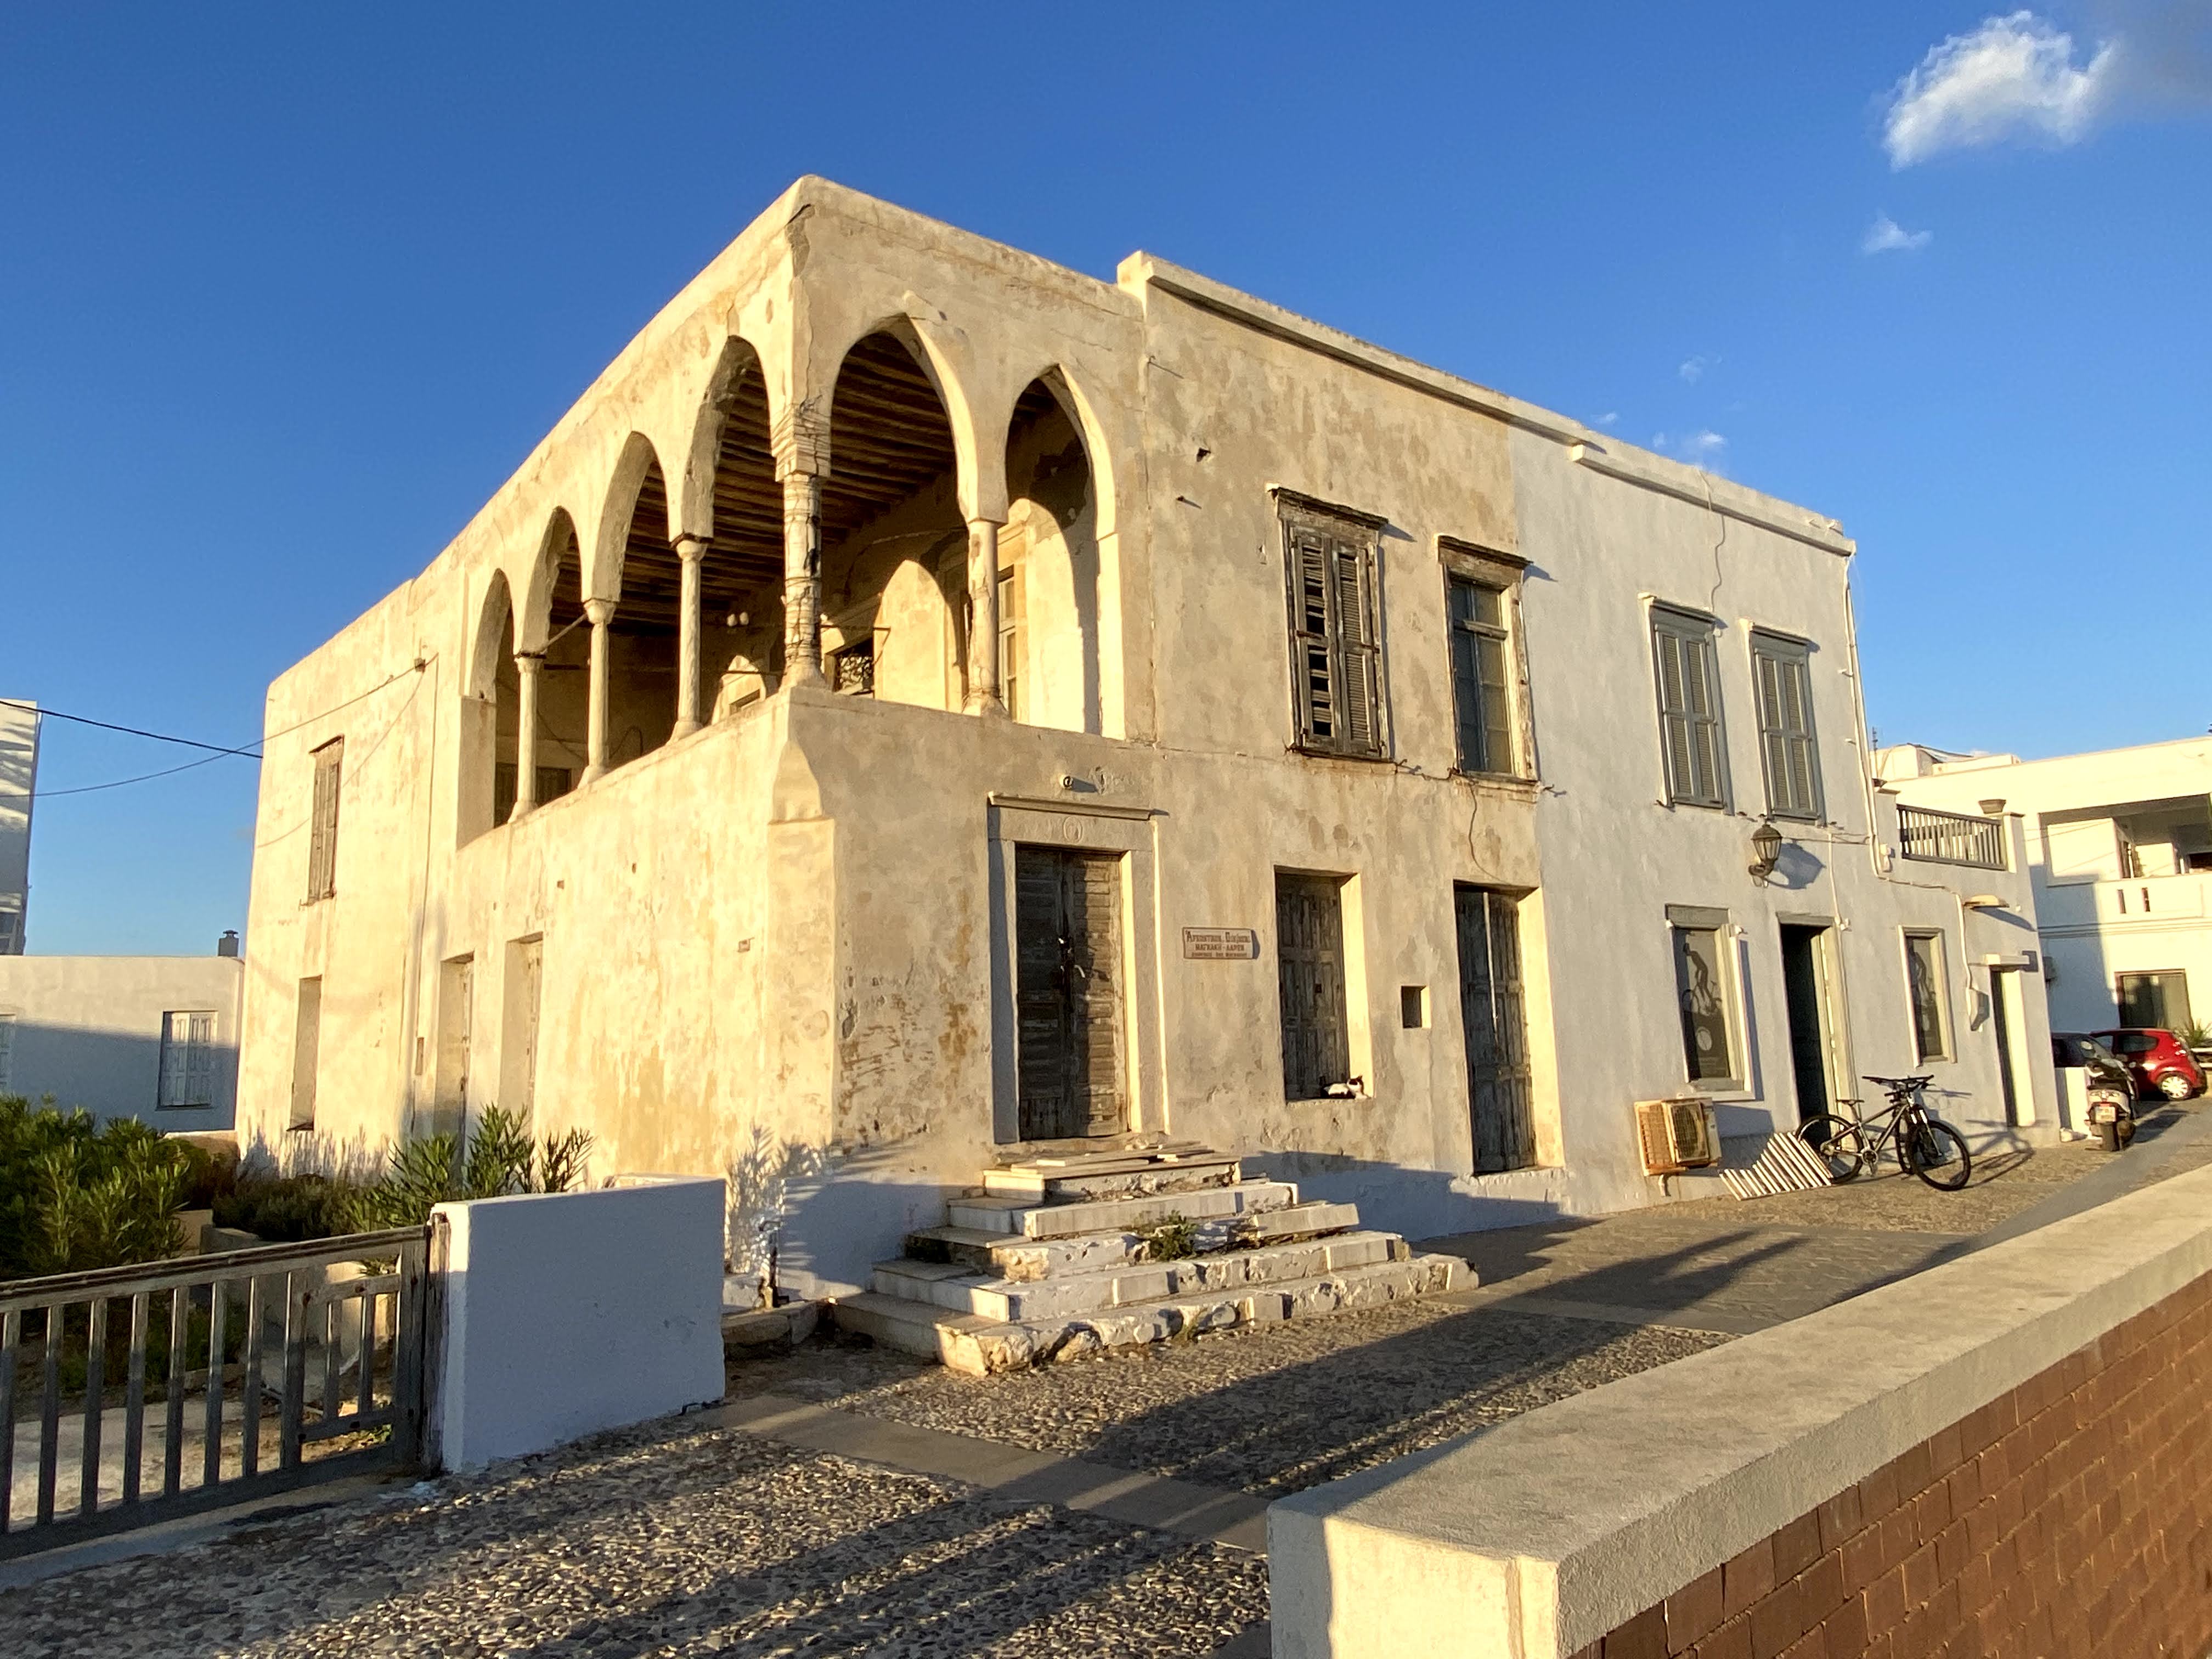 Magkaki house, Naxos